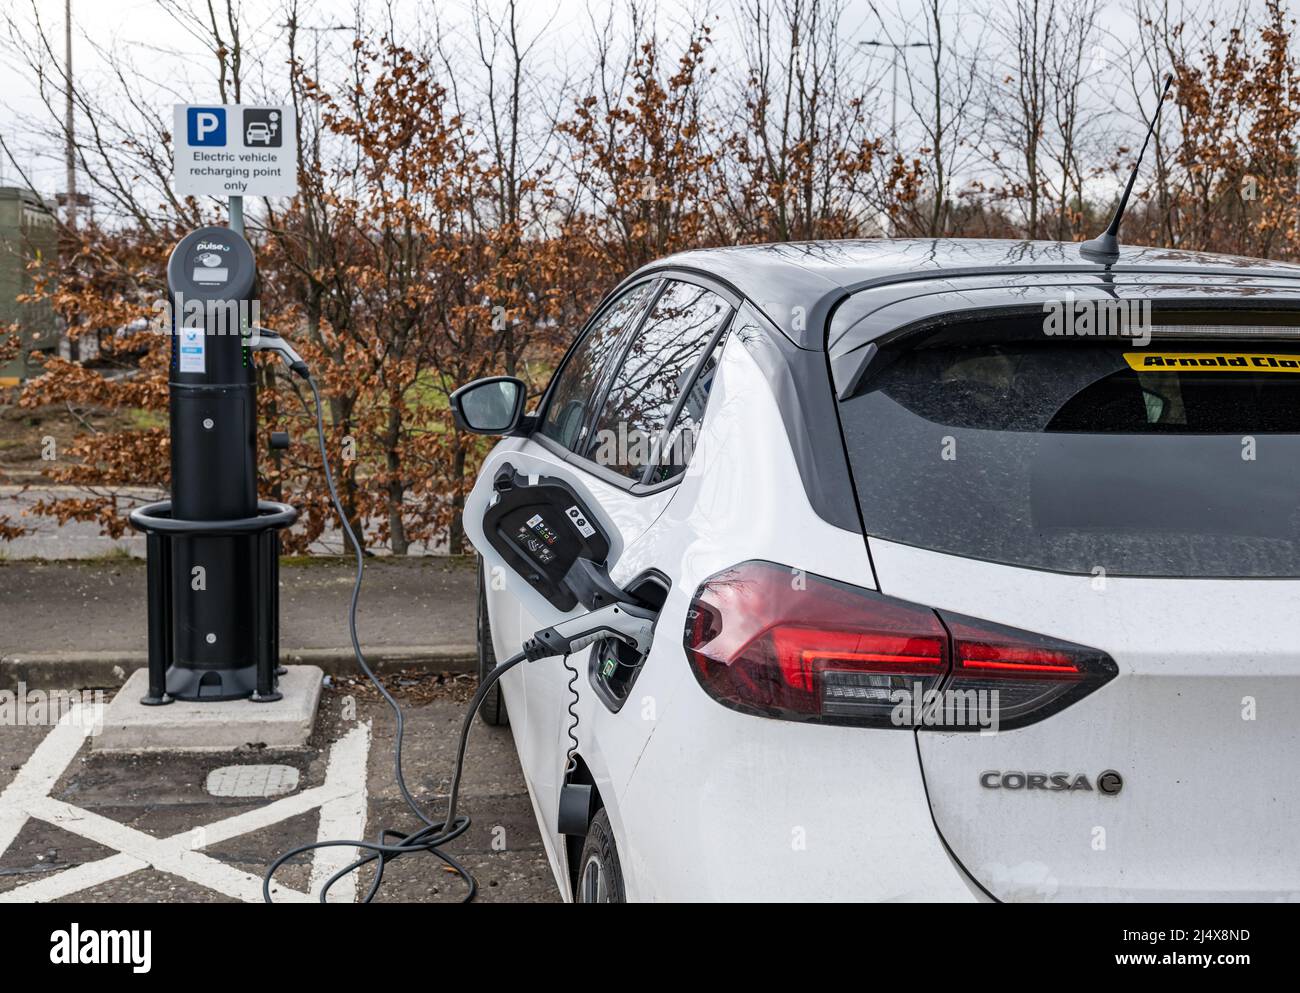 La voiture électrique Vauxhall Corsa étant chargée au point de recharge de la voiture, parc et promenade Ingliston, Édimbourg, Écosse, Royaume-Uni Banque D'Images